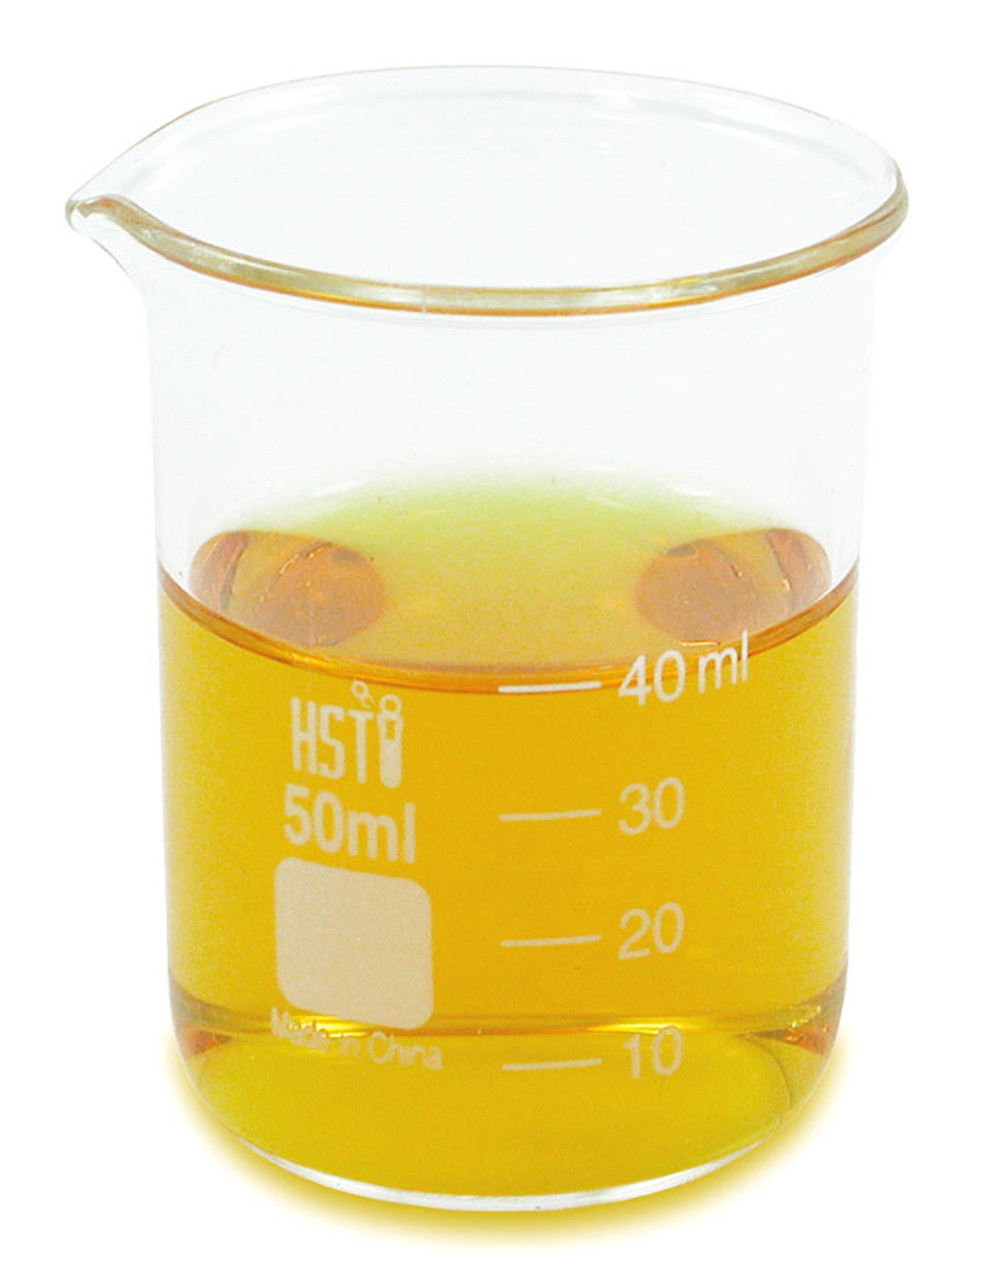 50 ml Glass Science Beaker